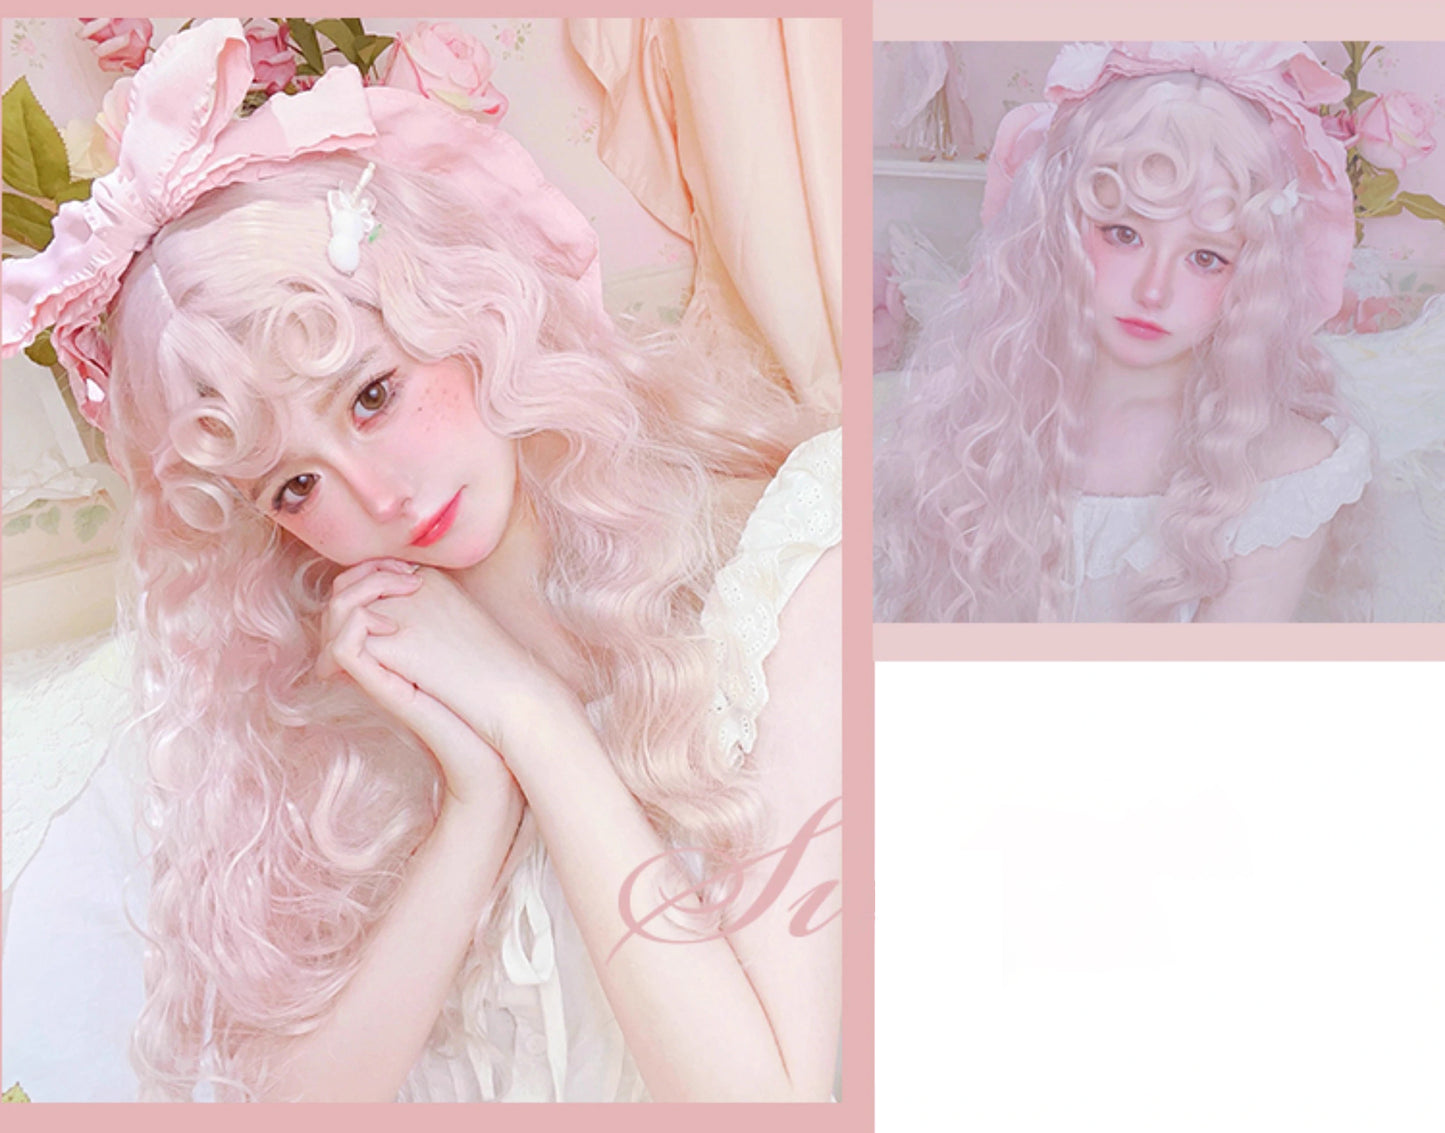 Rose Garden Light Pink Wool Curl Wig A40955